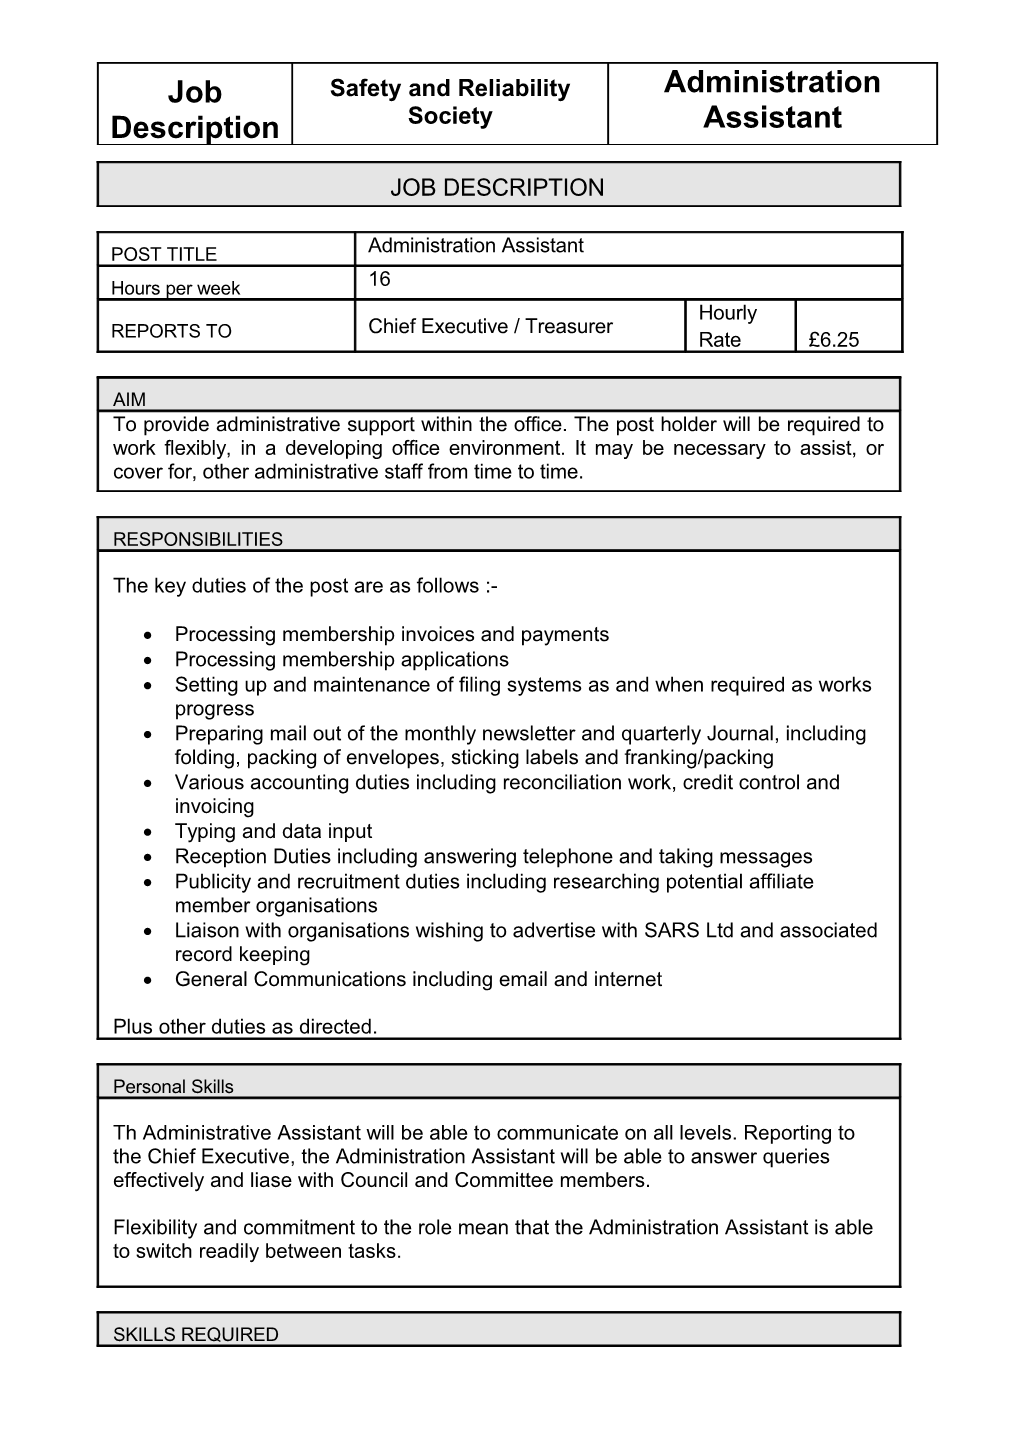 Speciment Job Description: Admin Assistant